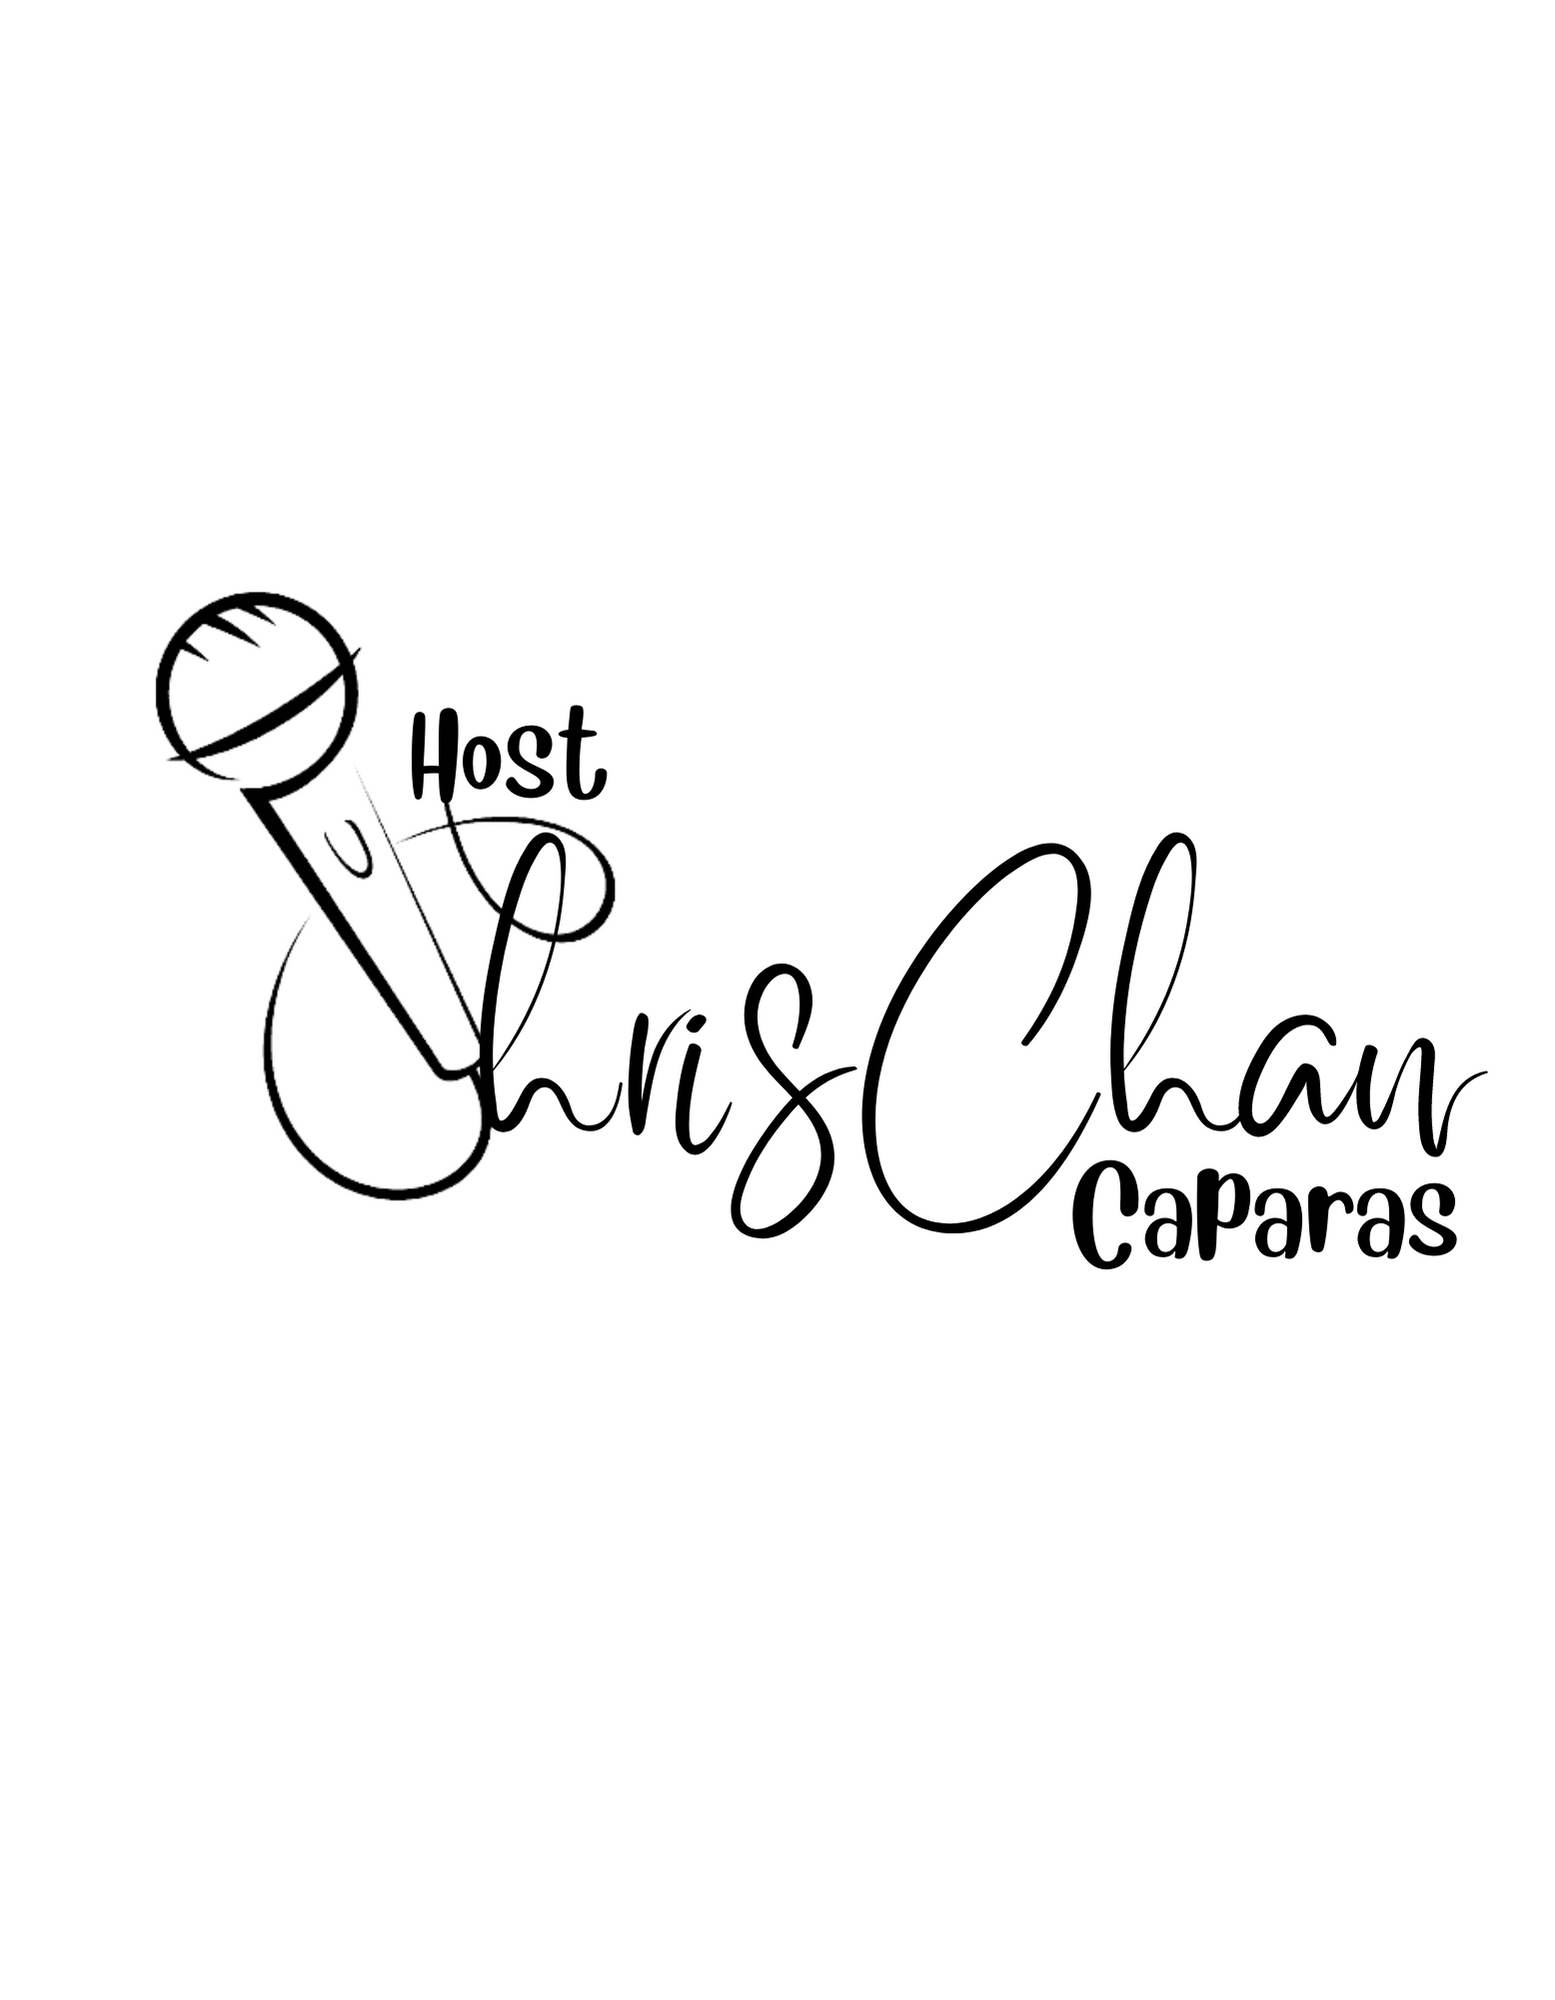 Host ChrisChan Caparas Logo